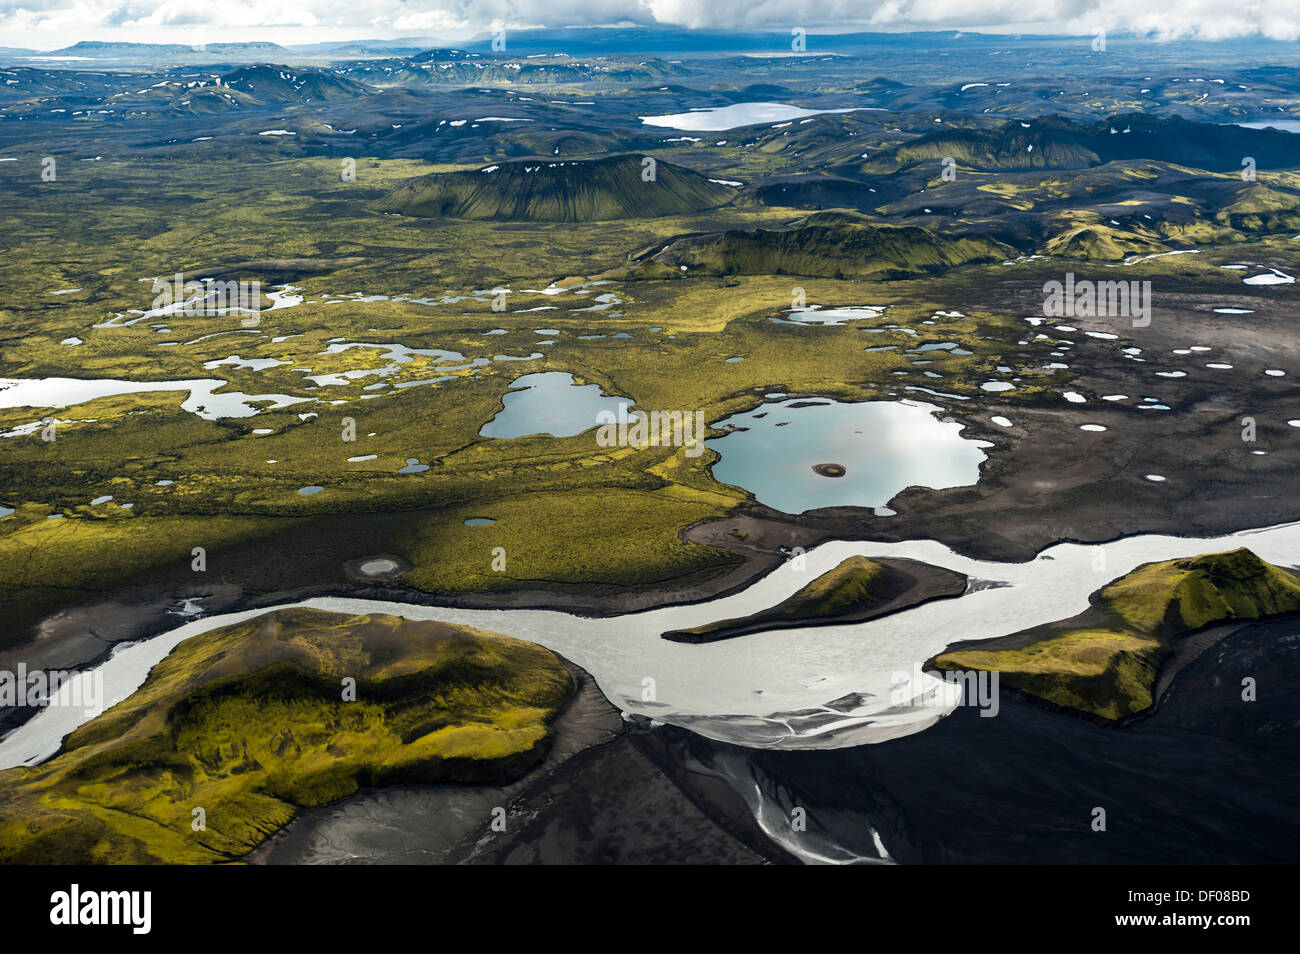 Vue aérienne de la rivière glaciaire Skaftá, couverts de mousse, montagnes, Langisjór, région des hautes terres d'Islande, Islande, Europe Banque D'Images